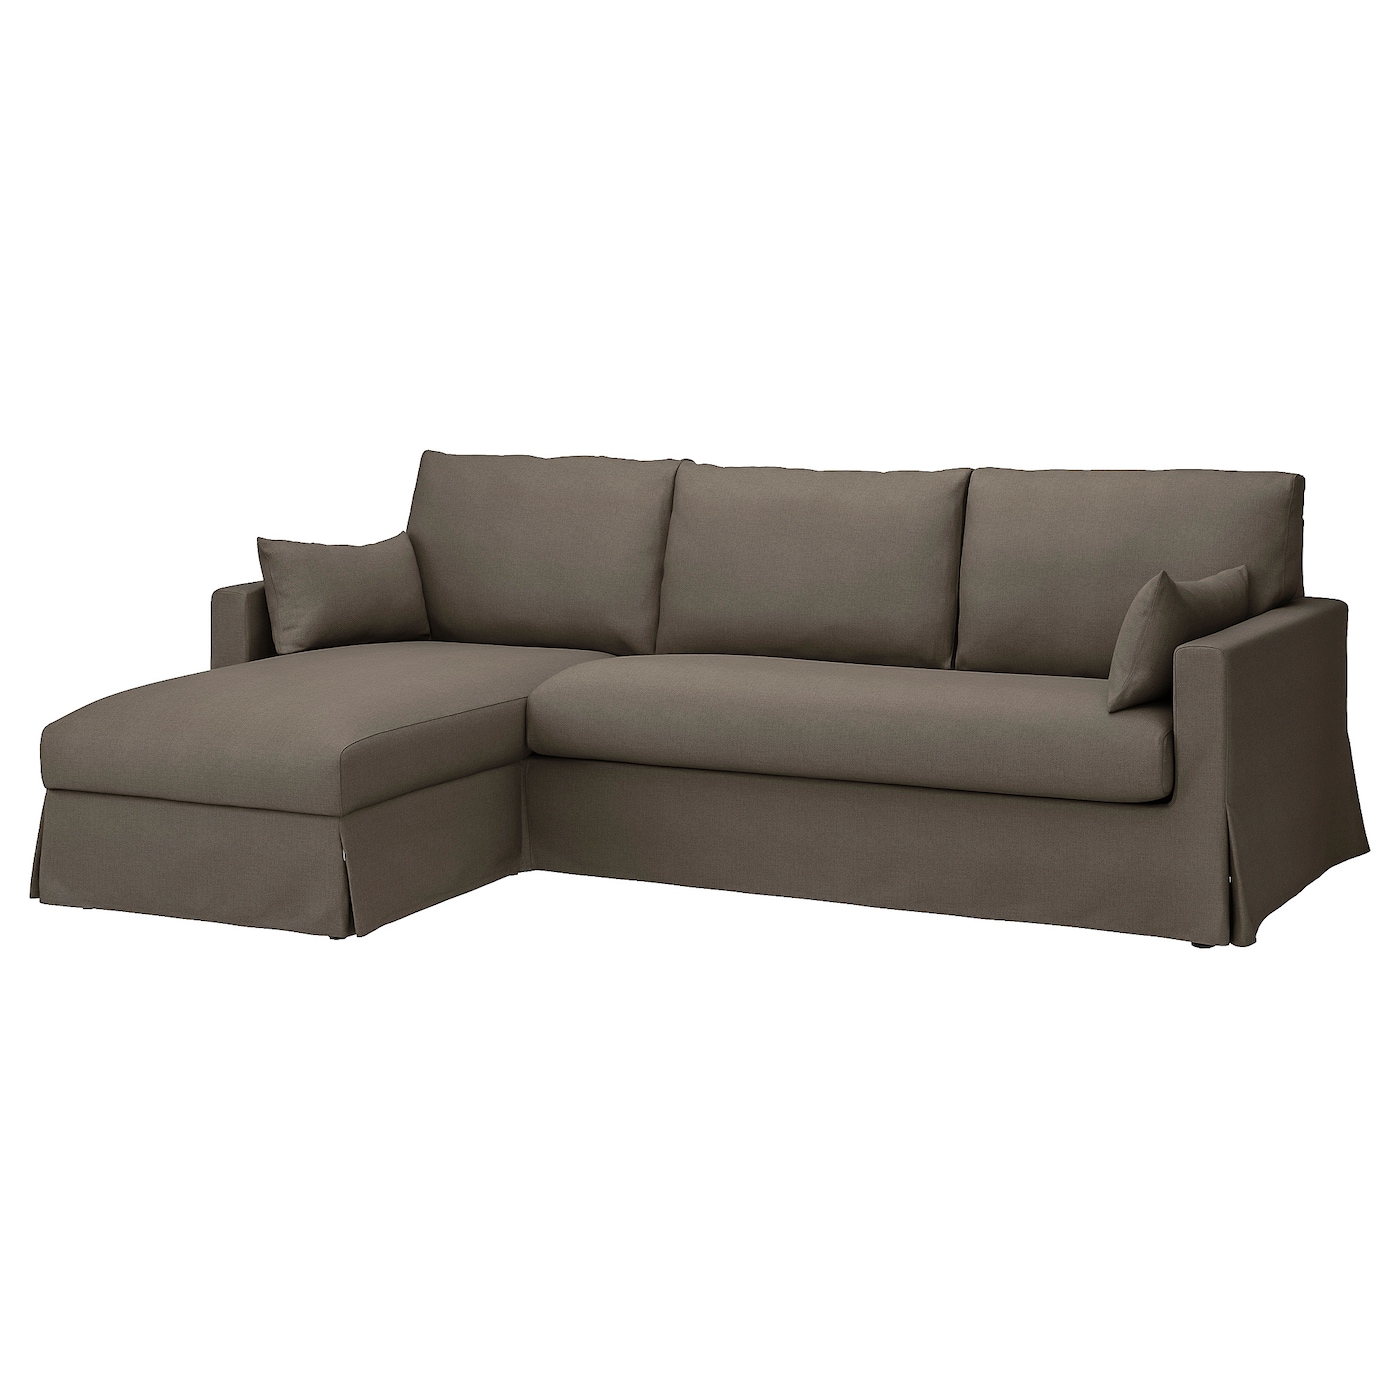 ХИЛТАРП 3-местный диван + диван, левый, Грансель серо-коричневый HYLTARP IKEA